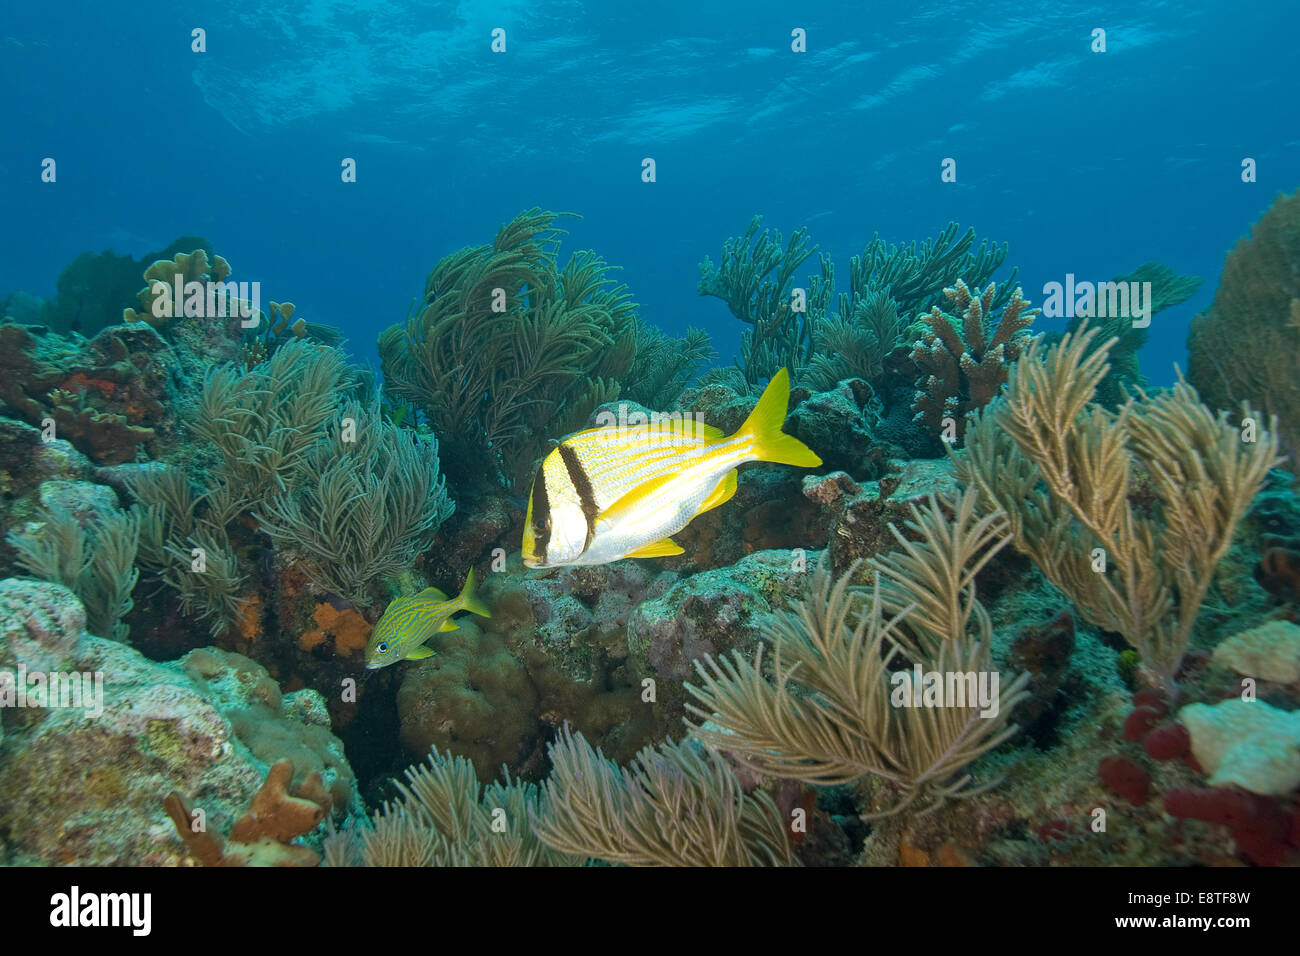 Tropical fish Coral reef at Florida Keys Stock Photo